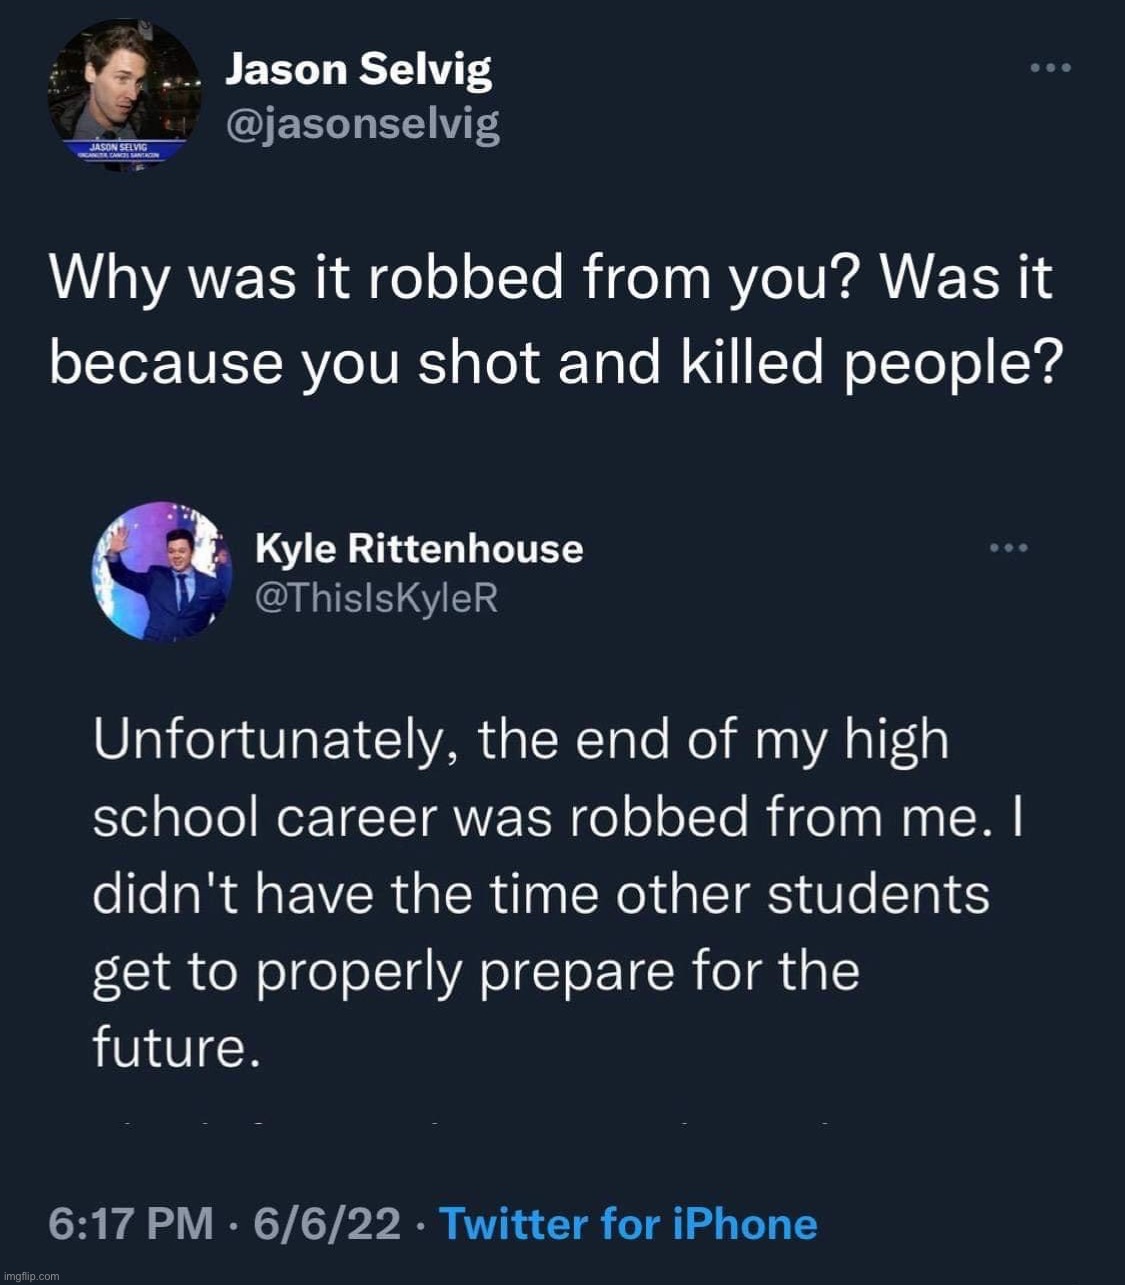 Kyle Rittenhouse Twitter troll | image tagged in kyle rittenhouse twitter troll,kyle rittenhouse,twitter,internet trolls | made w/ Imgflip meme maker